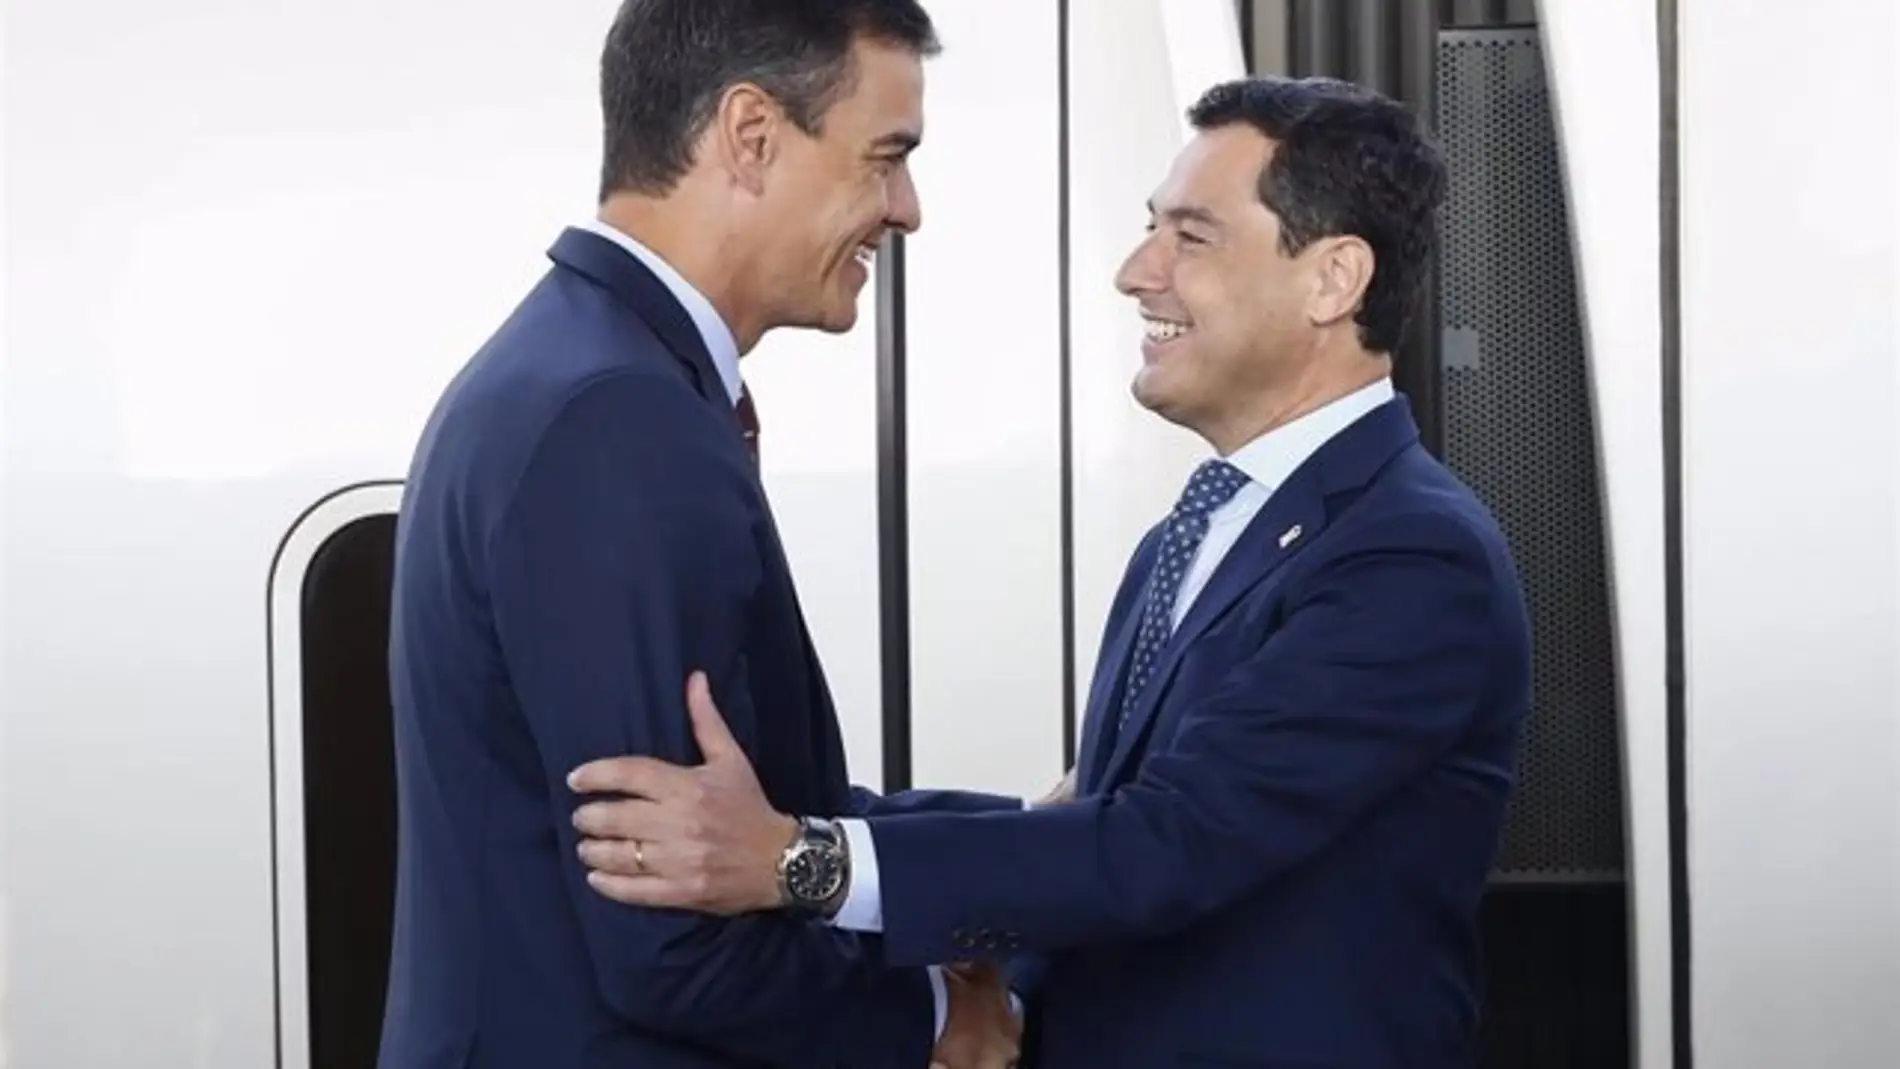 El presidente del Gobierno Pedro Sánchez, y el presidente de la Junta de Andalucía, Juanma Moreno, en una imagen de archivo